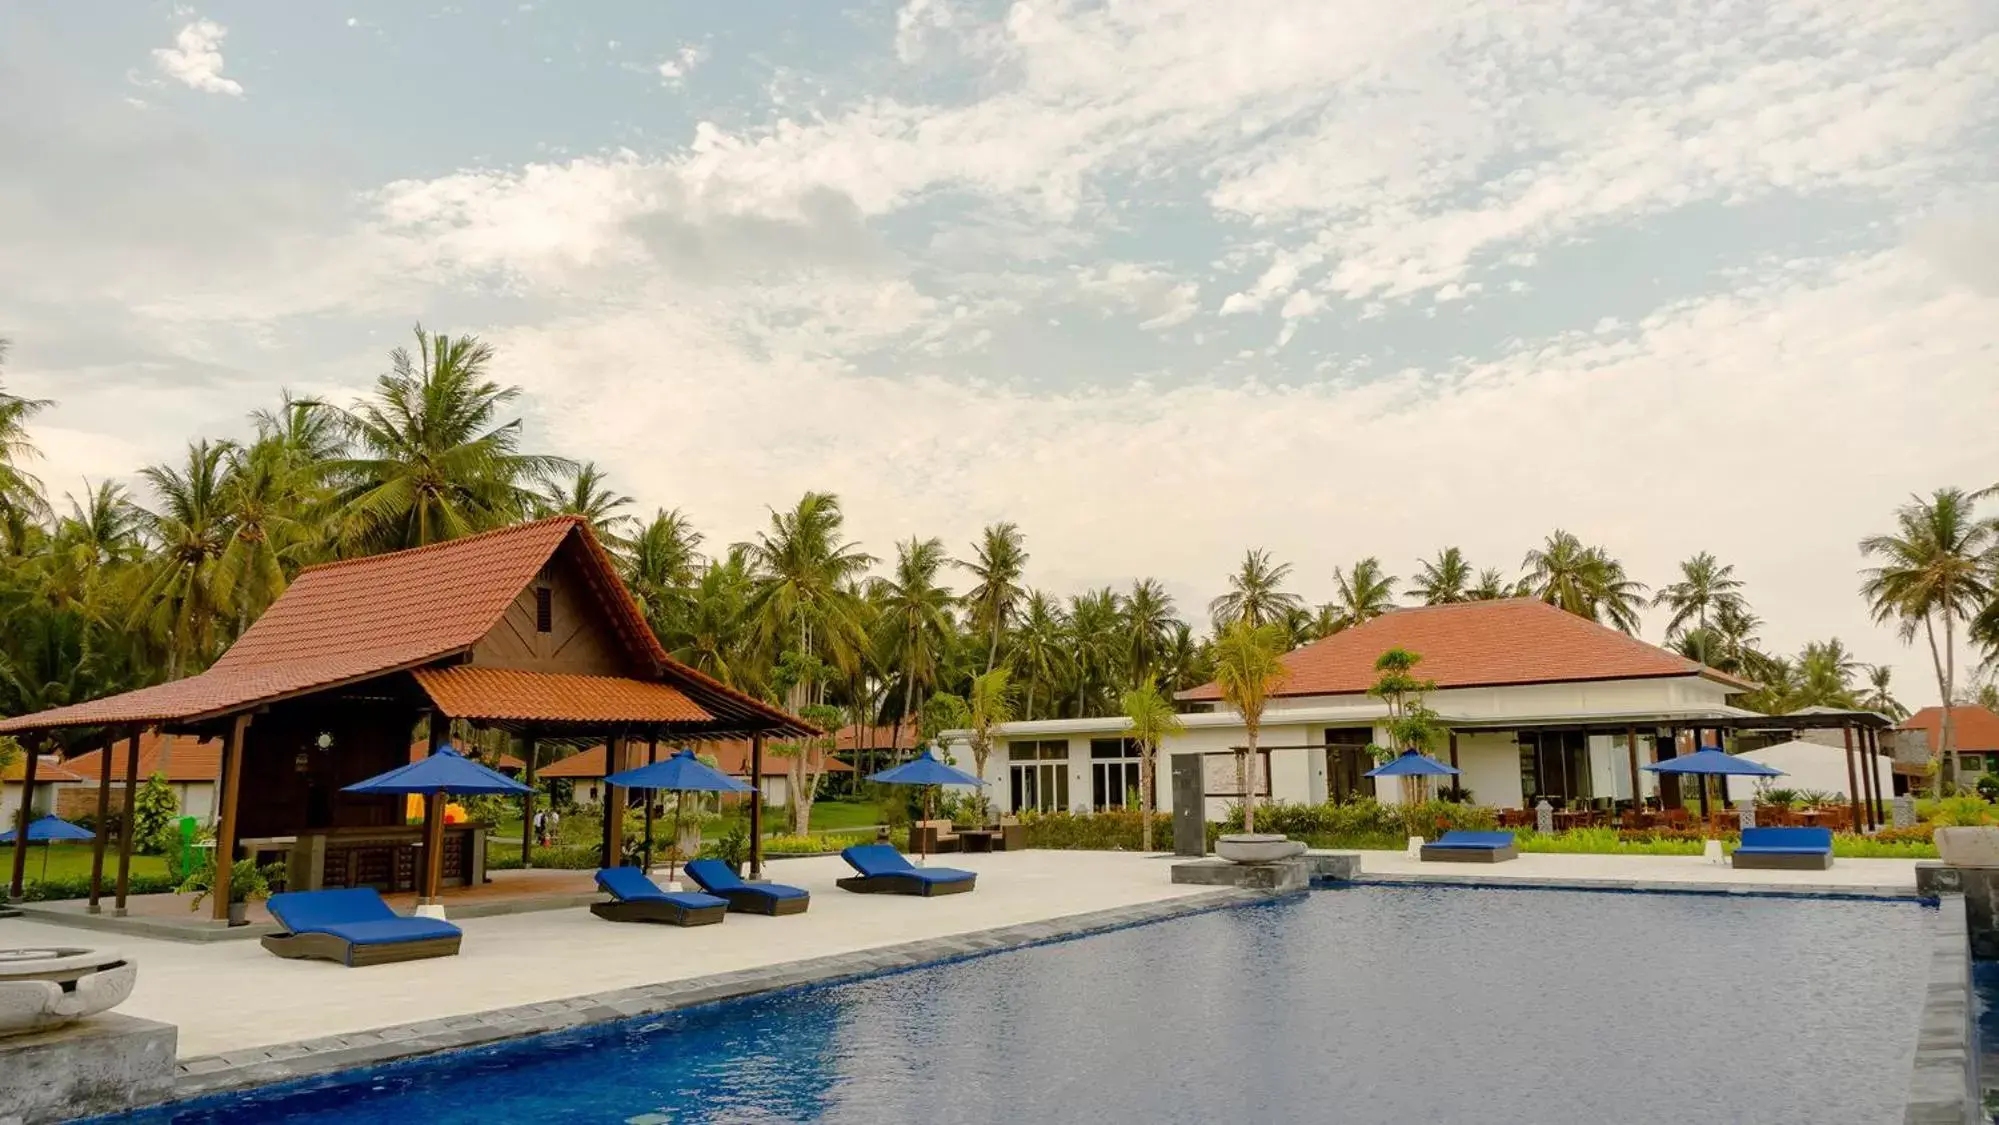 Property building, Swimming Pool in Ketapang Indah Hotel